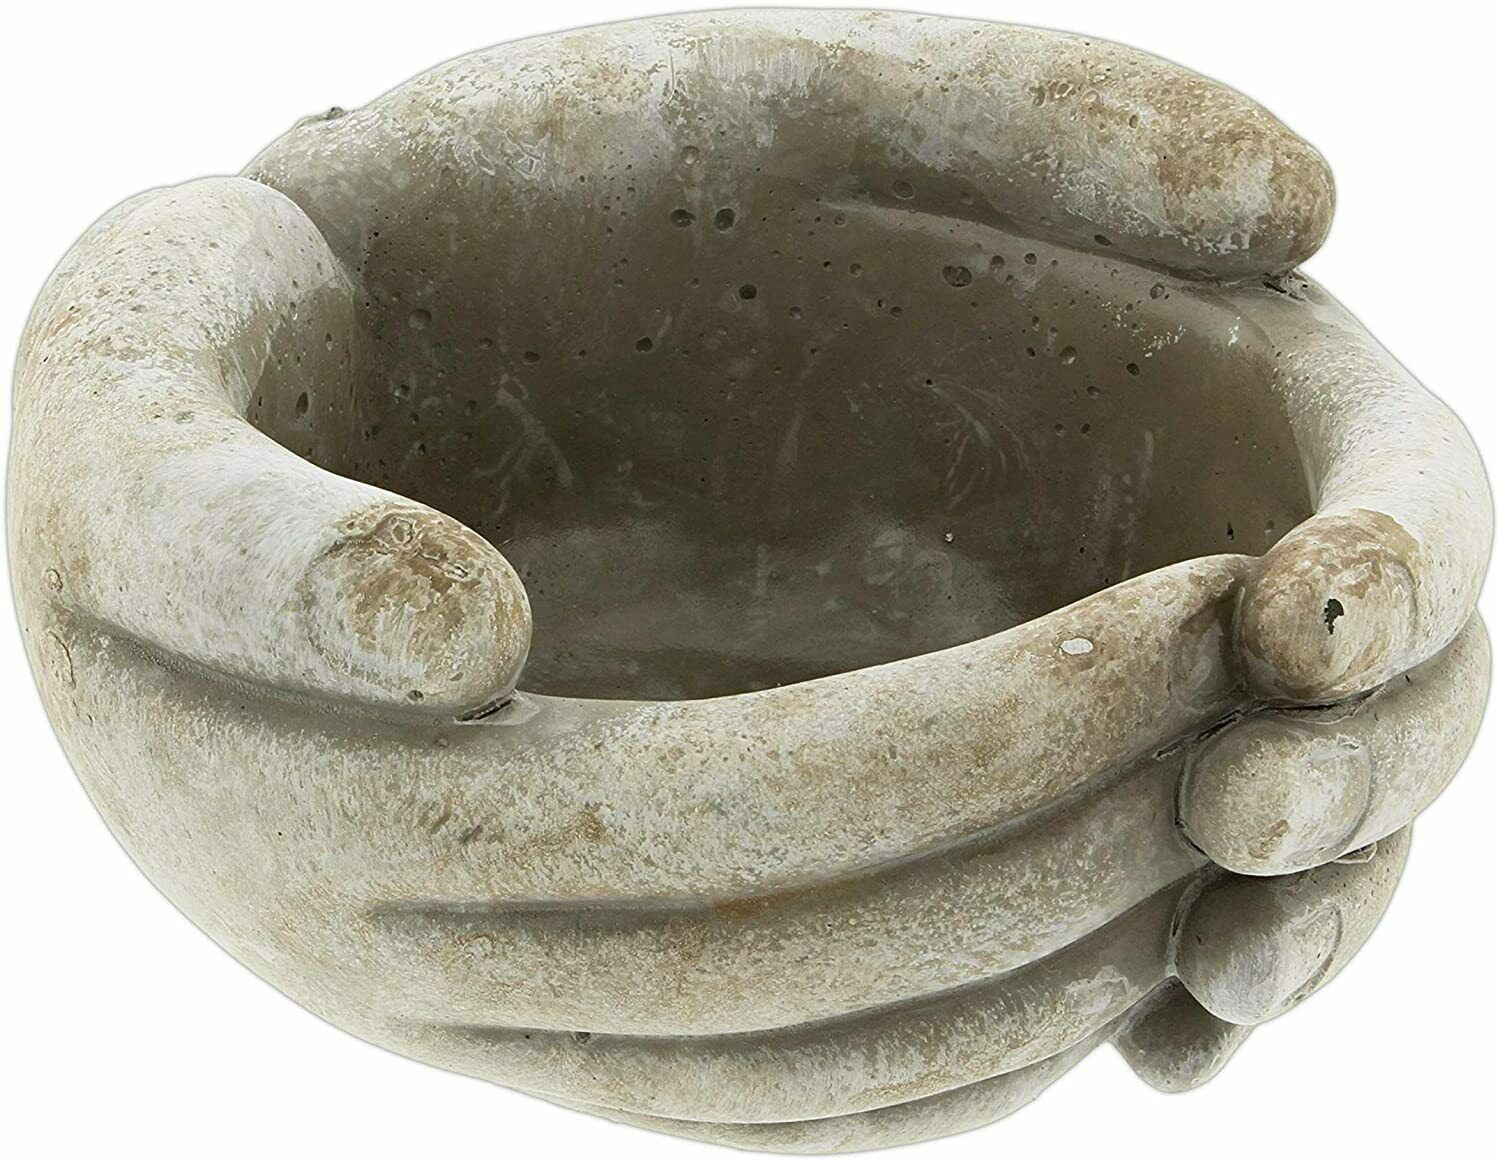 CUPPED HANDS Cement Planter Pot, 5.5" x 5" x 3", by MayRich - Walmart.com